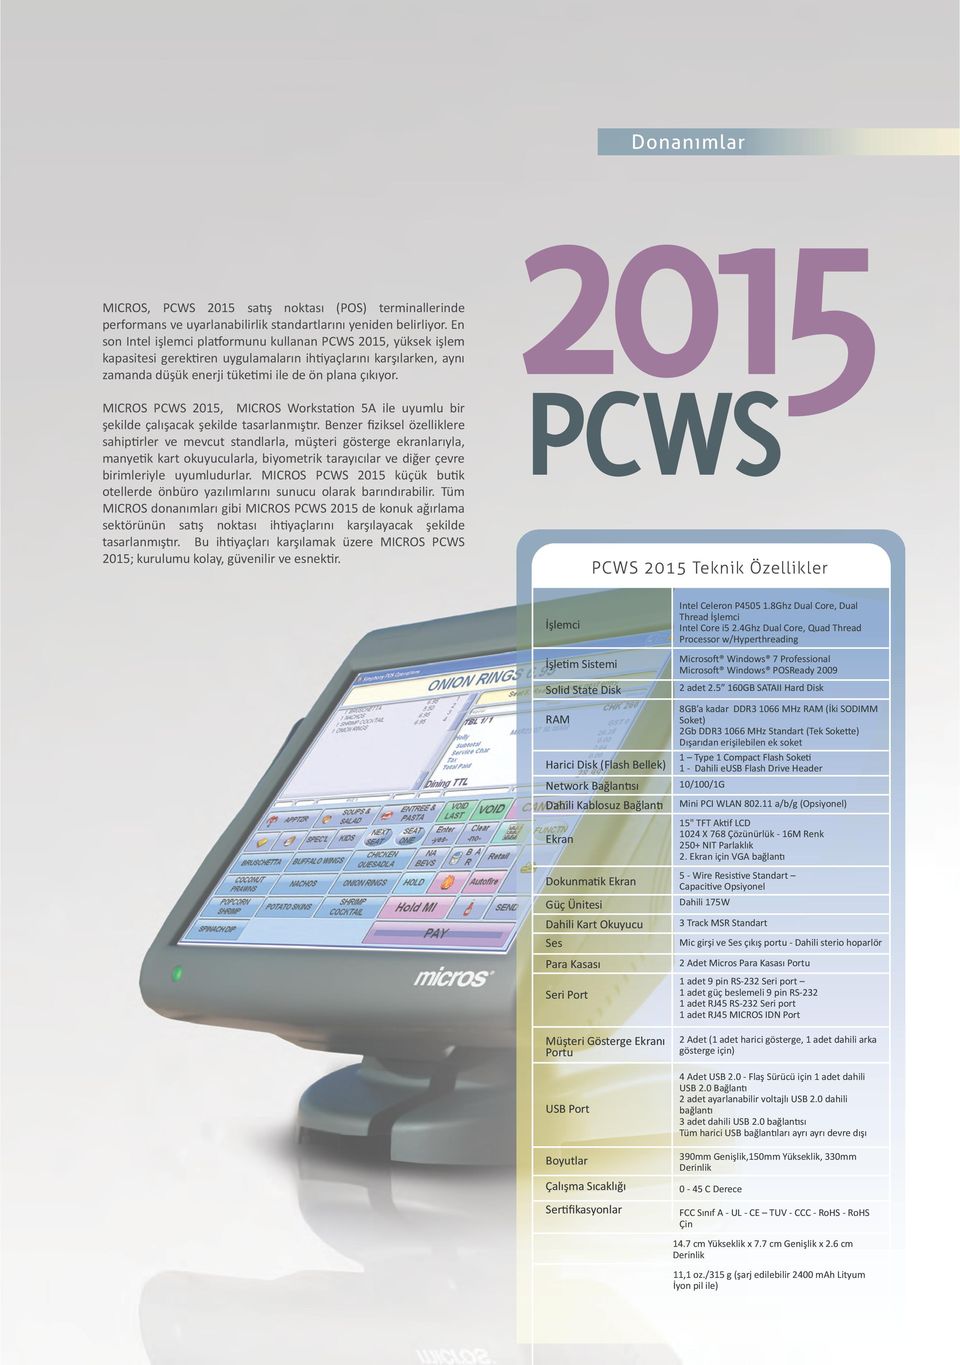 MICROS PCWS 2015, MICROS Workstation 5A ile uyumlu bir şekilde çalışacak şekilde tasarlanmıştır.